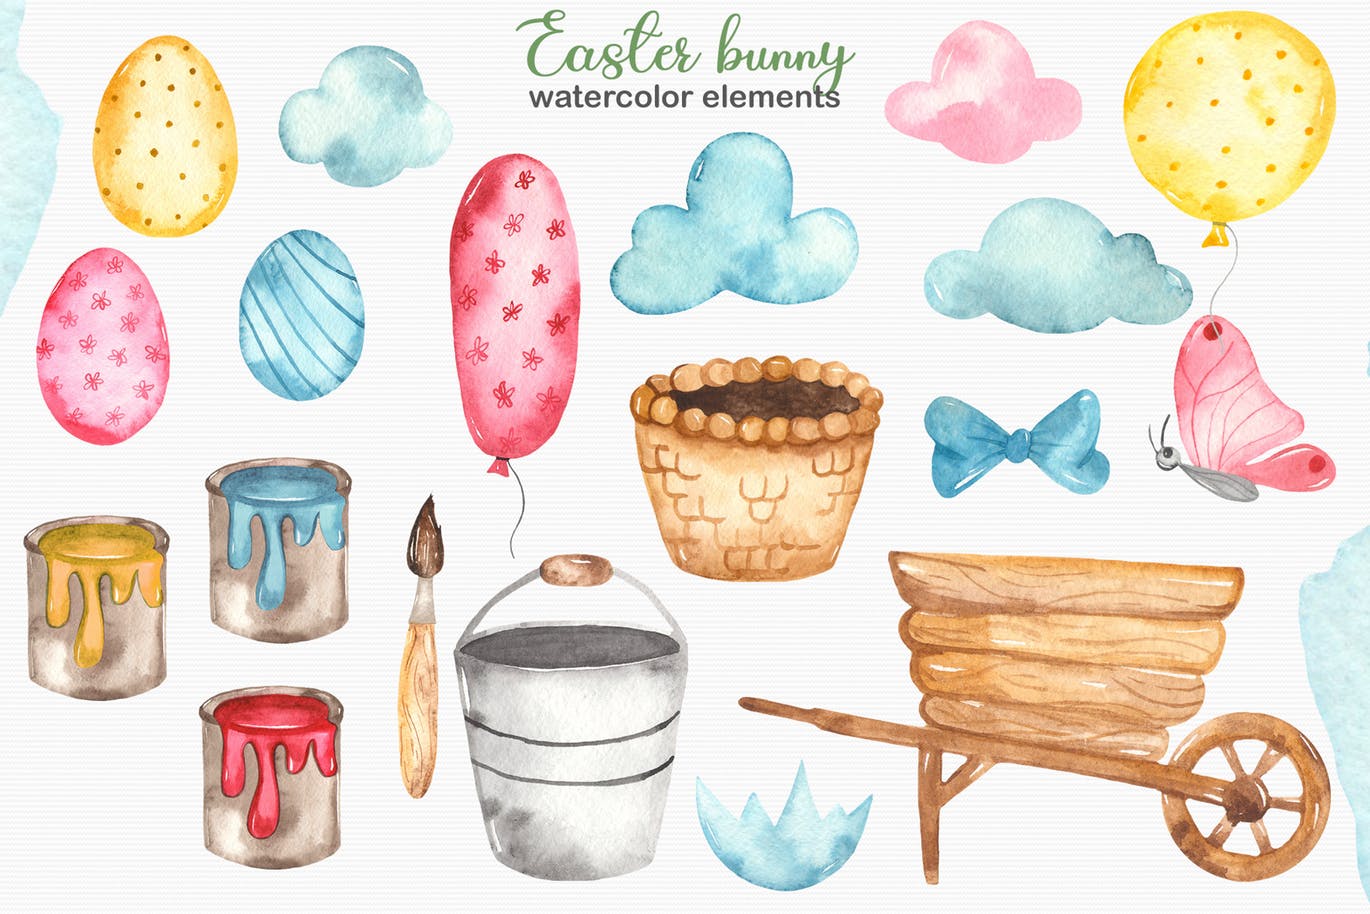 复活节兔子水彩手绘素材套装 Watercolor Easter Bunny collection插图2